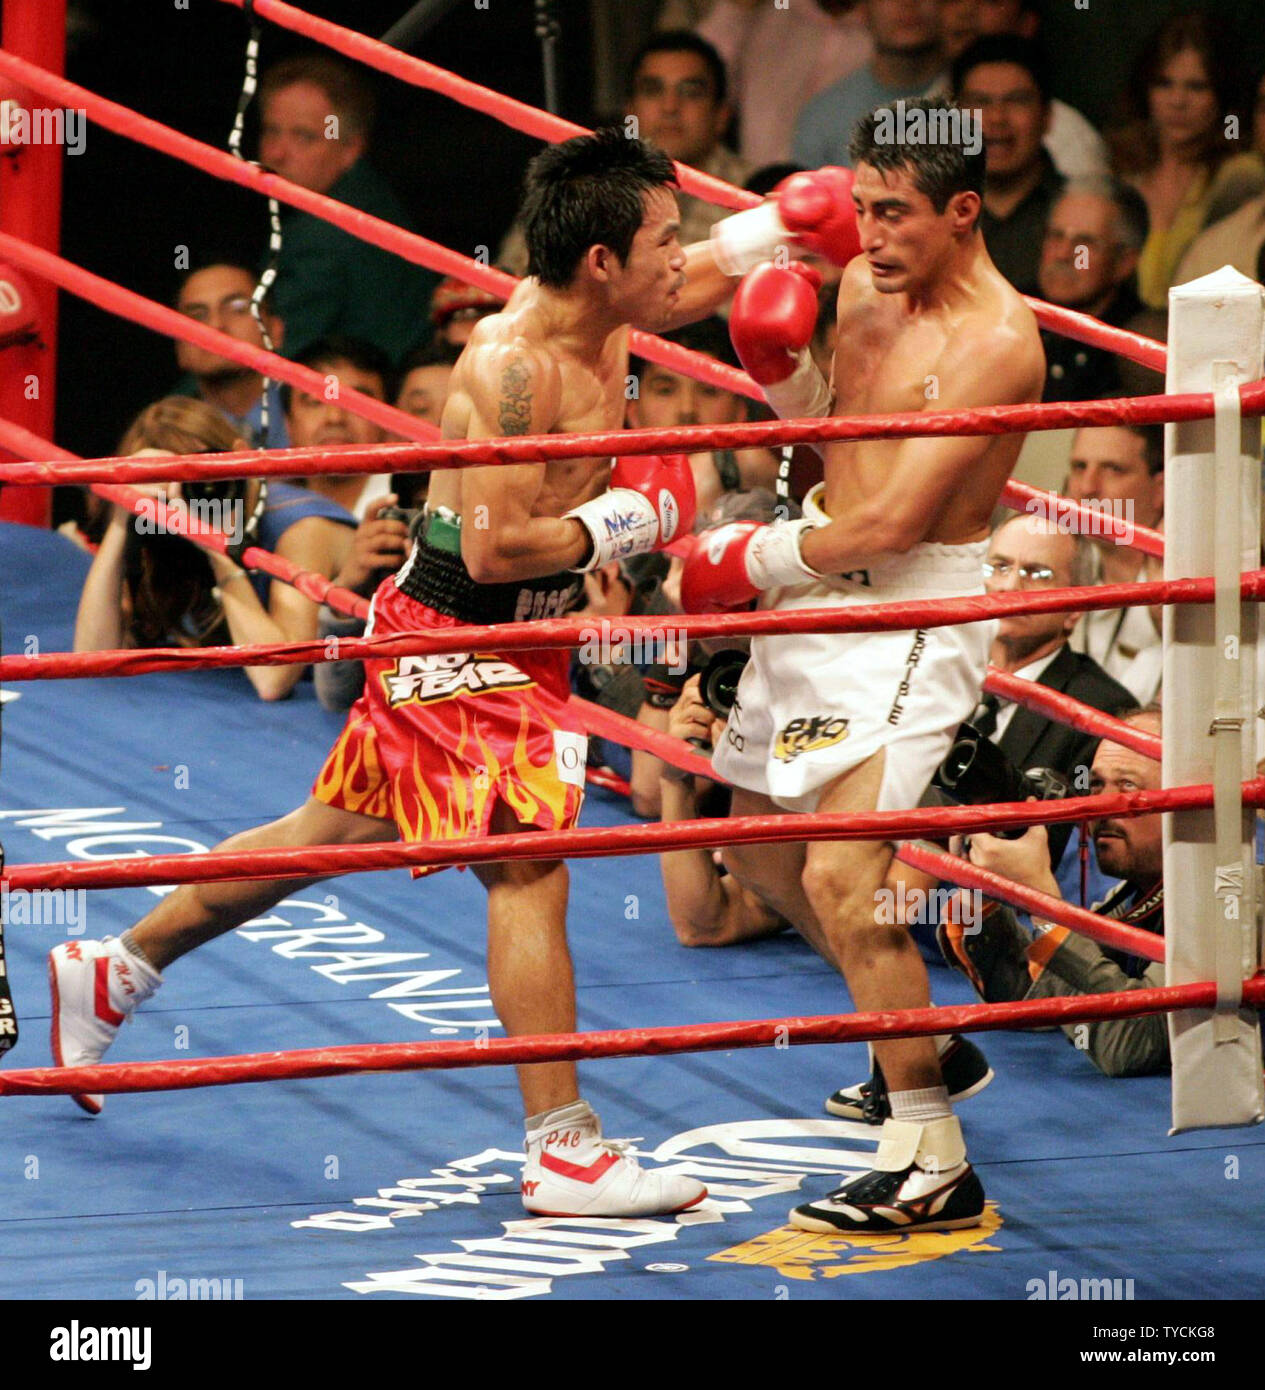 Eric Morales de Tijuana, au Mexique, est frappée par une gauche livré par Manny Pacquiao de Manille, Philippiens au cours de leur lutte au MGM Grand, Las Vegas le 19 mars 2005. Morales a gagné le Super-plume titre avec une décision plus de Pacquiao. (Photo d'UPI/Roger Williams) Banque D'Images